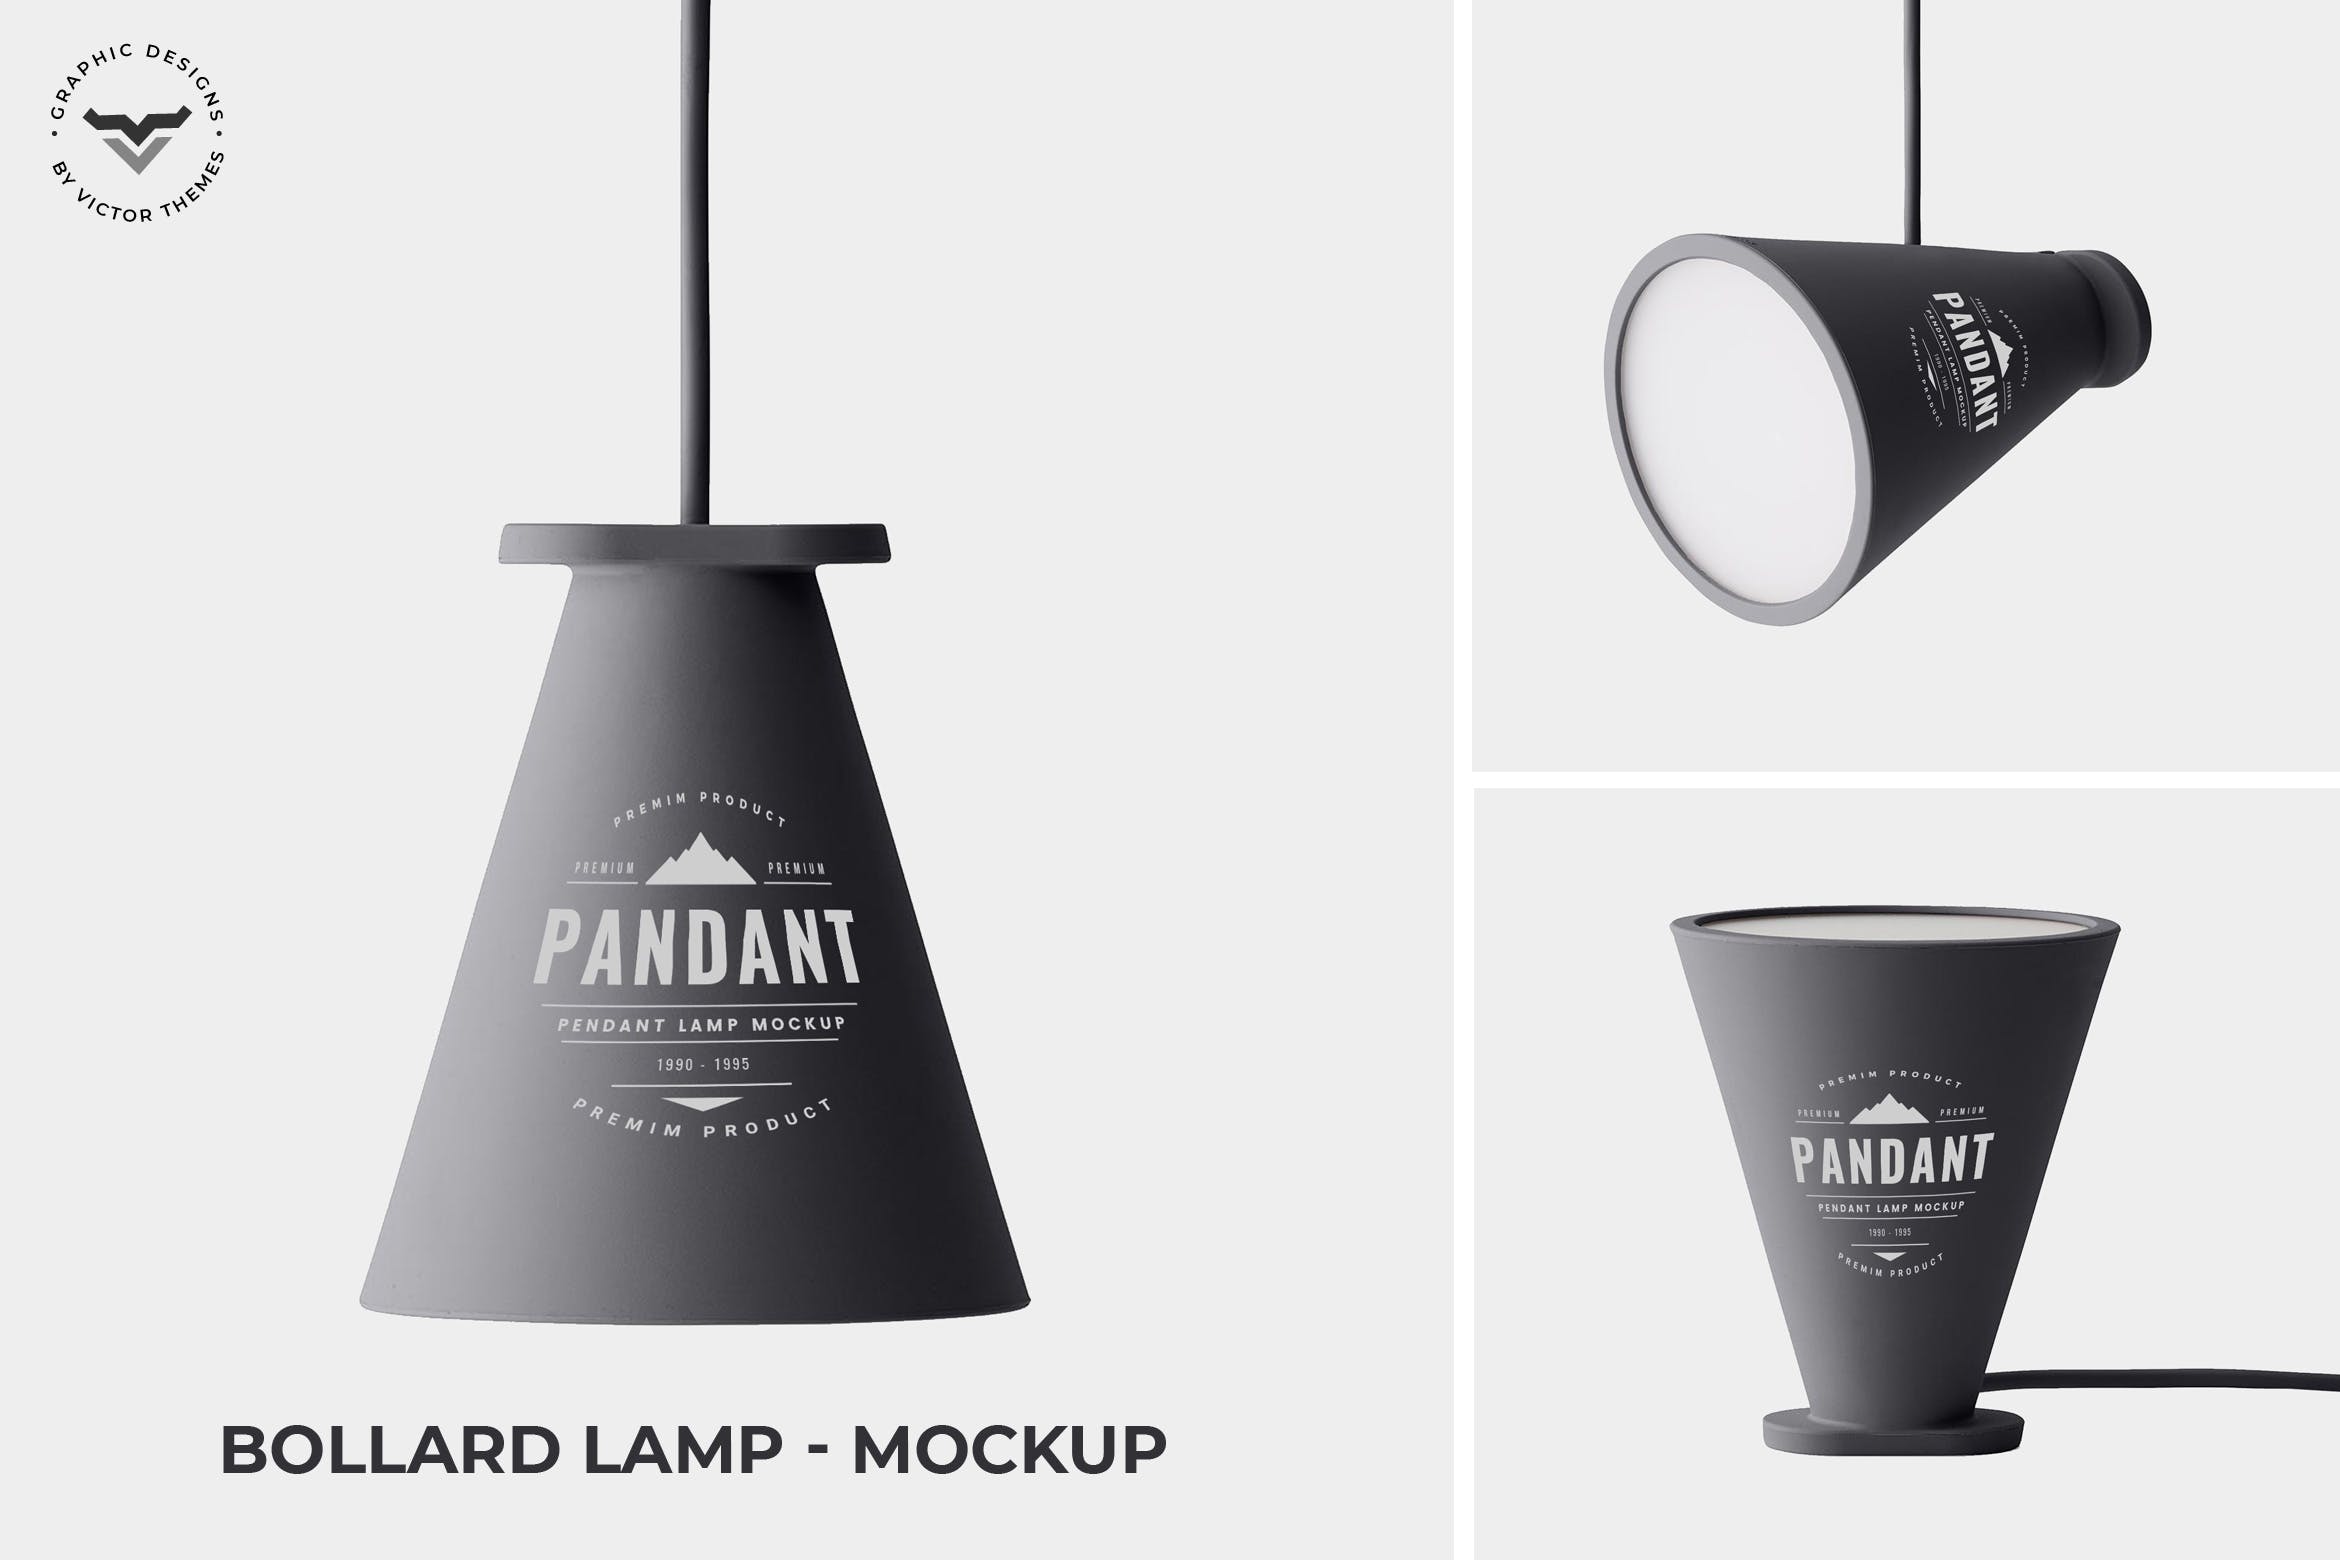 创意灯具设计效果图非凡图库精选 Bollard Lamp Mockup插图